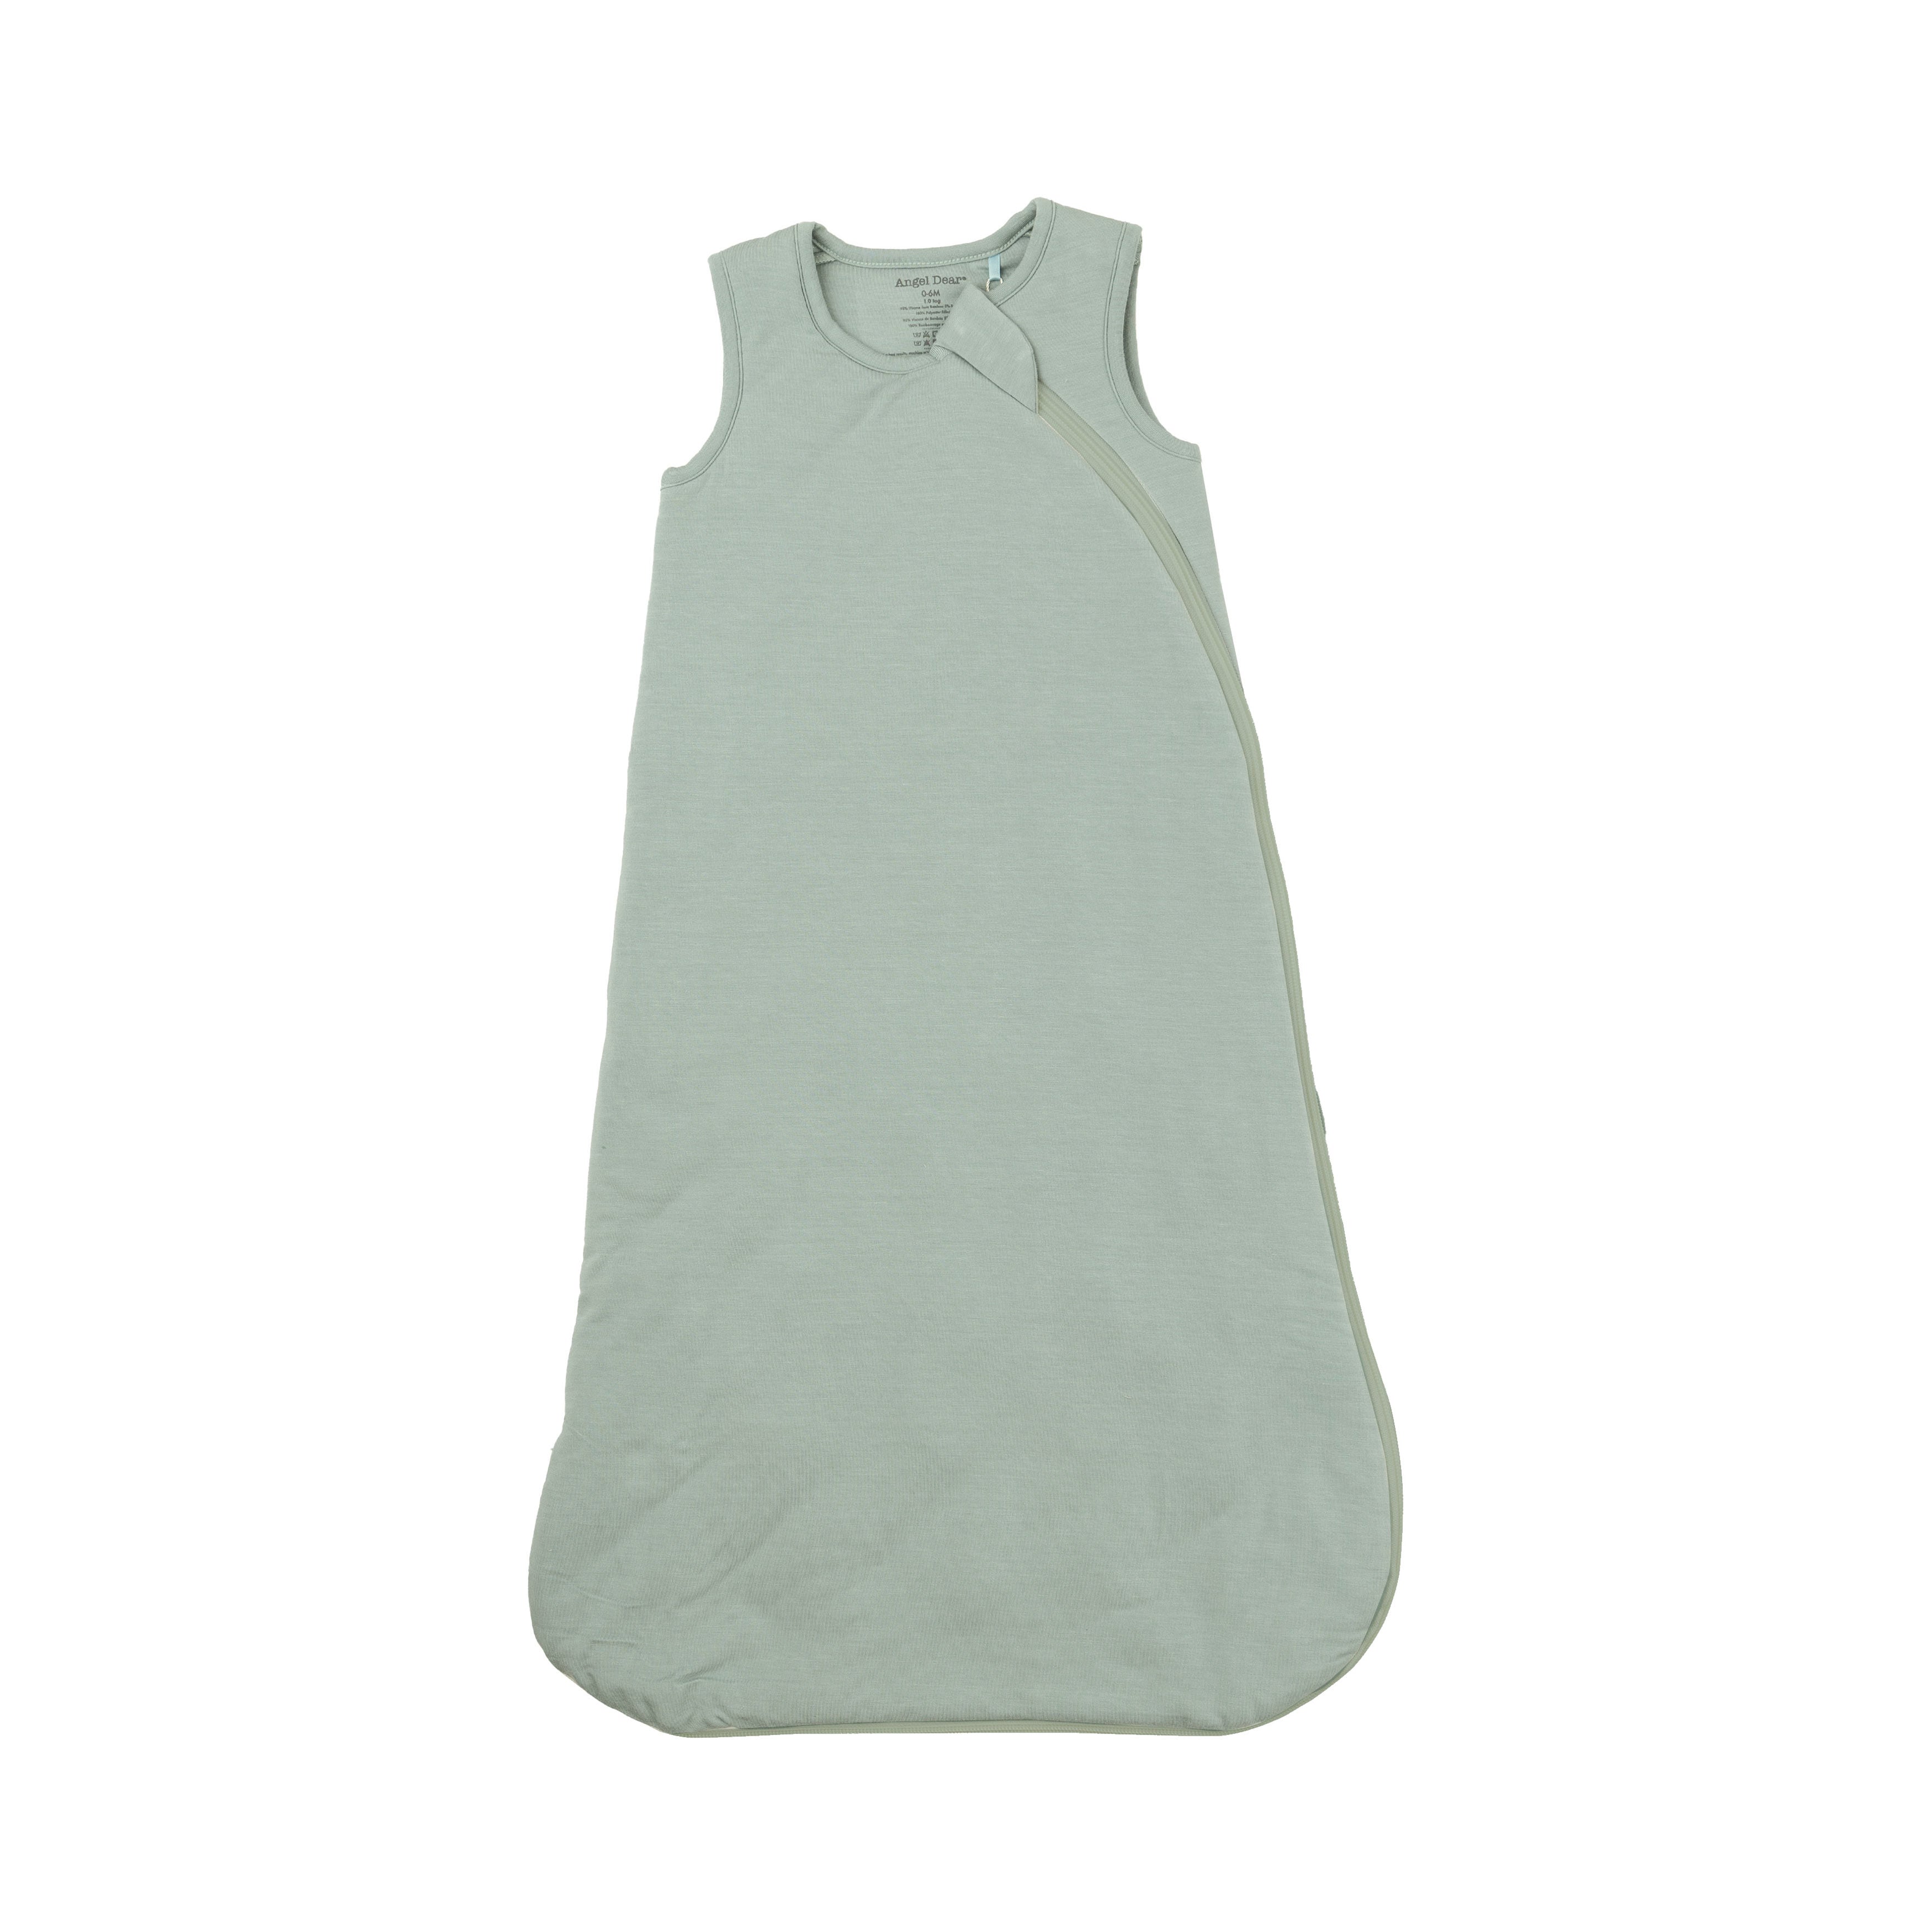 Sleep Bag - Seafoam Green Solid